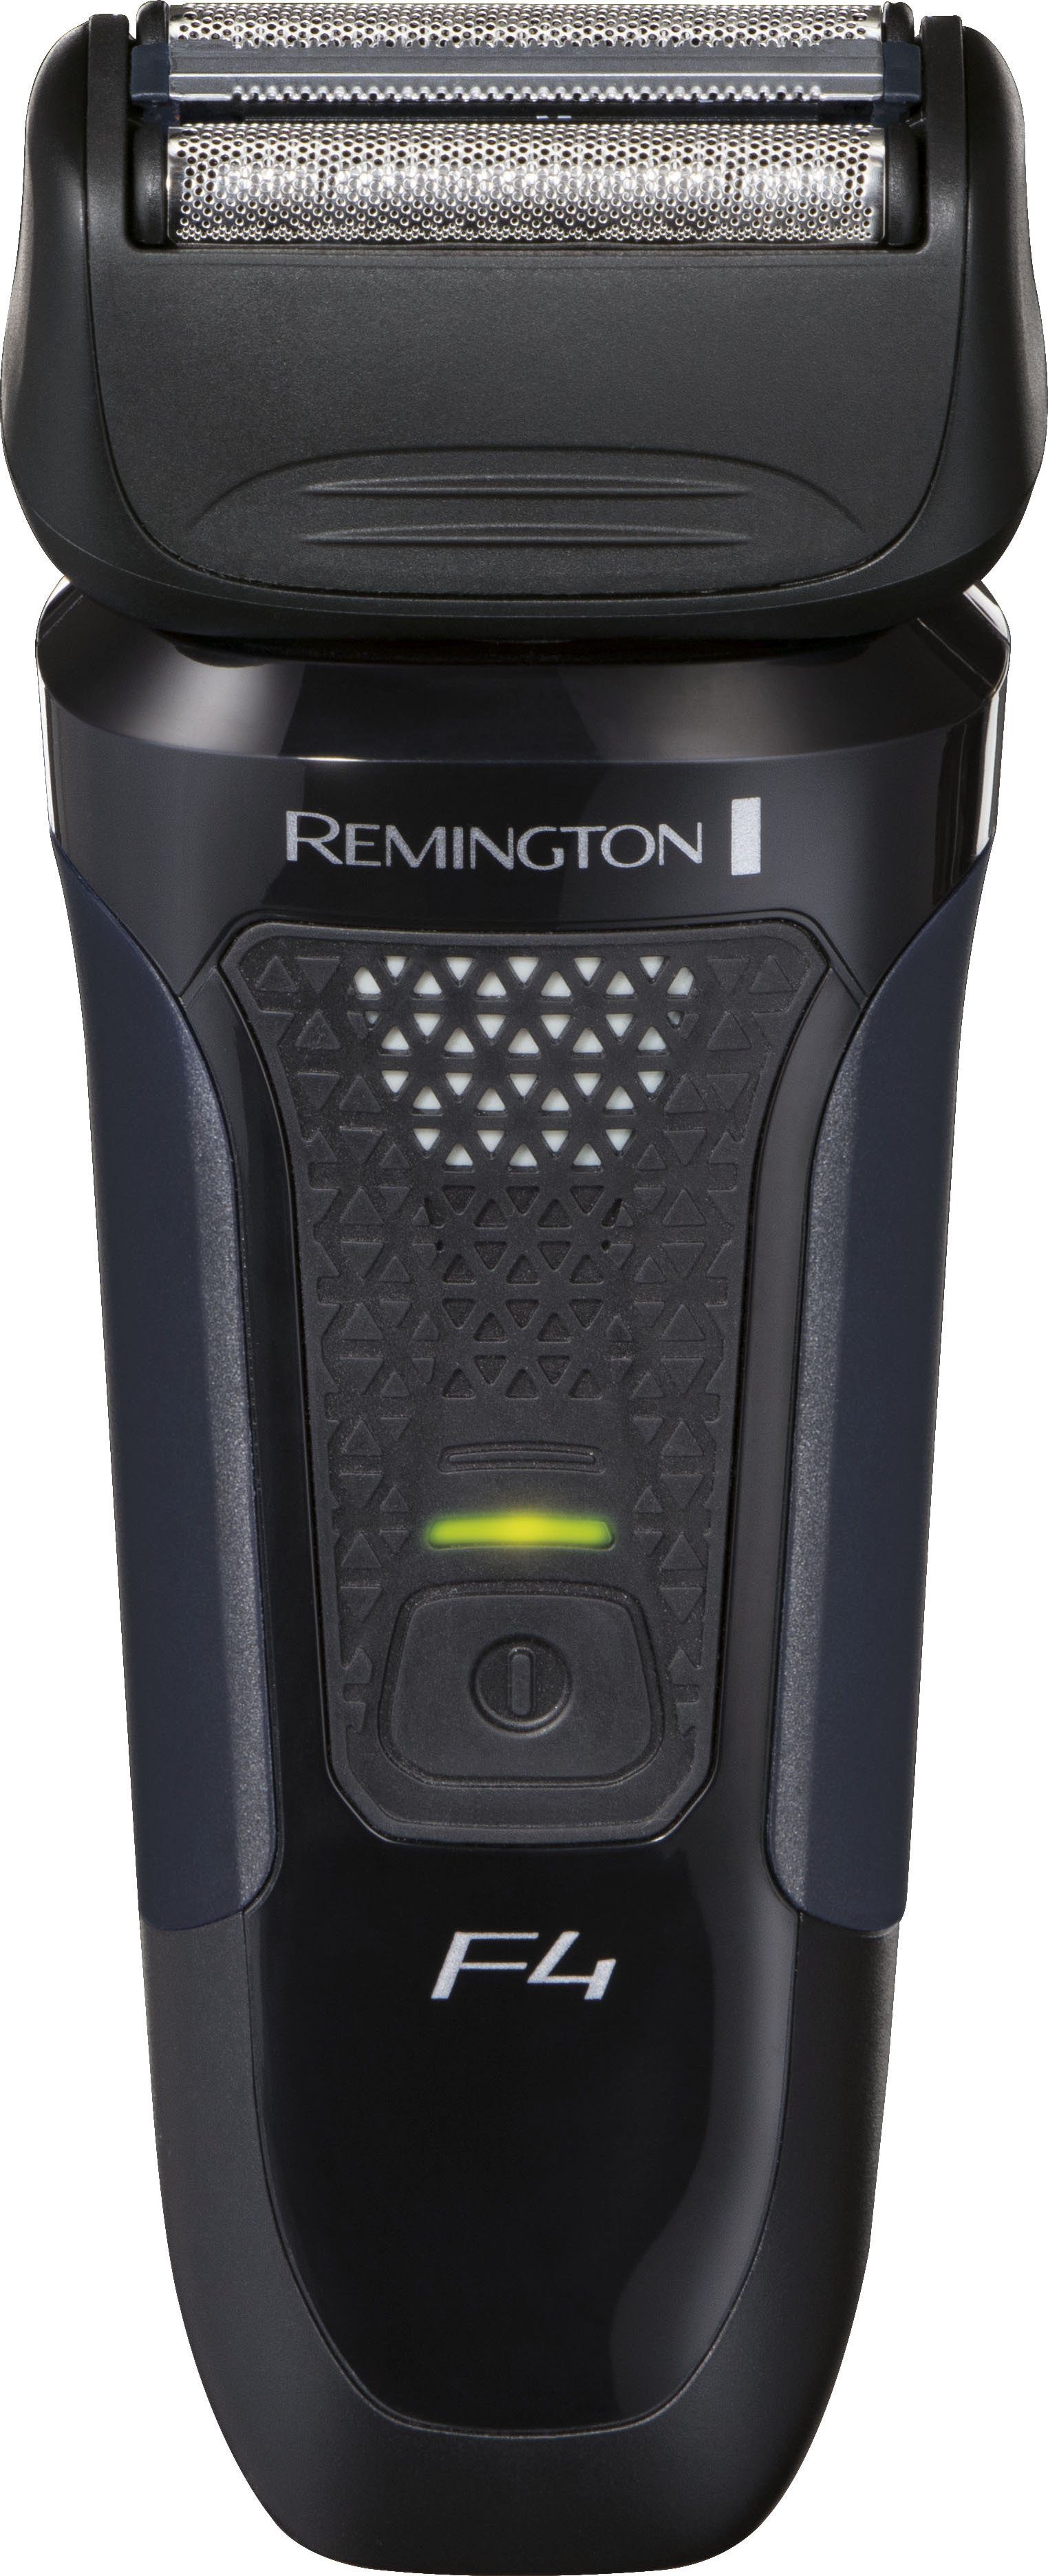 Remington Elektrorasierer F4002 Style integrierter Aufsätze: Series Detailschneider, F4, Shaver +3-Tage wasserdicht Foil Bart-Aufsatz/Schutzkappe, 1, 100% Präzisionstrimmer